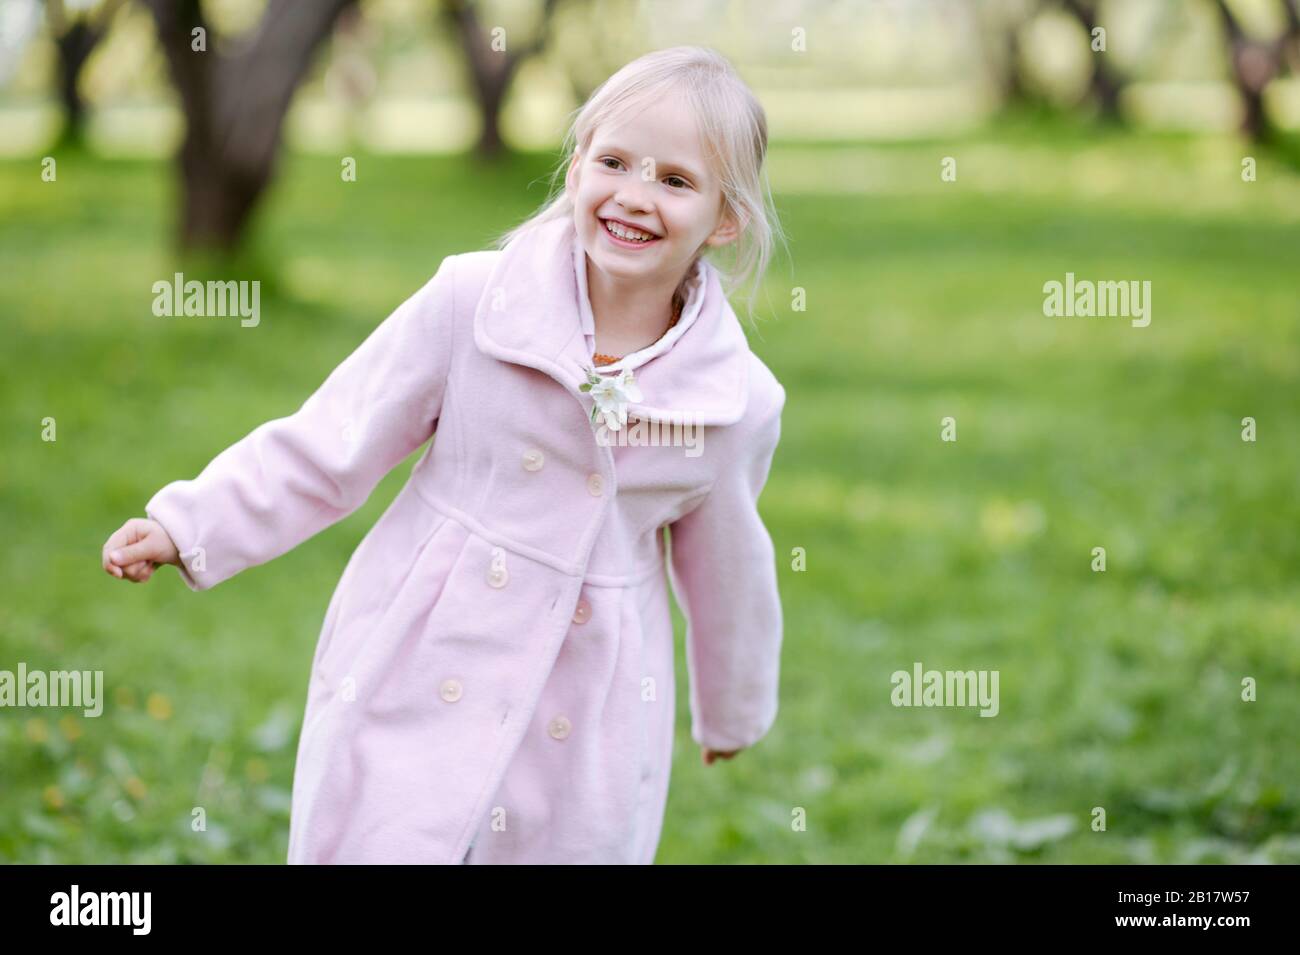 Portrait de heureuse petite fille portant un manteau rose Banque D'Images